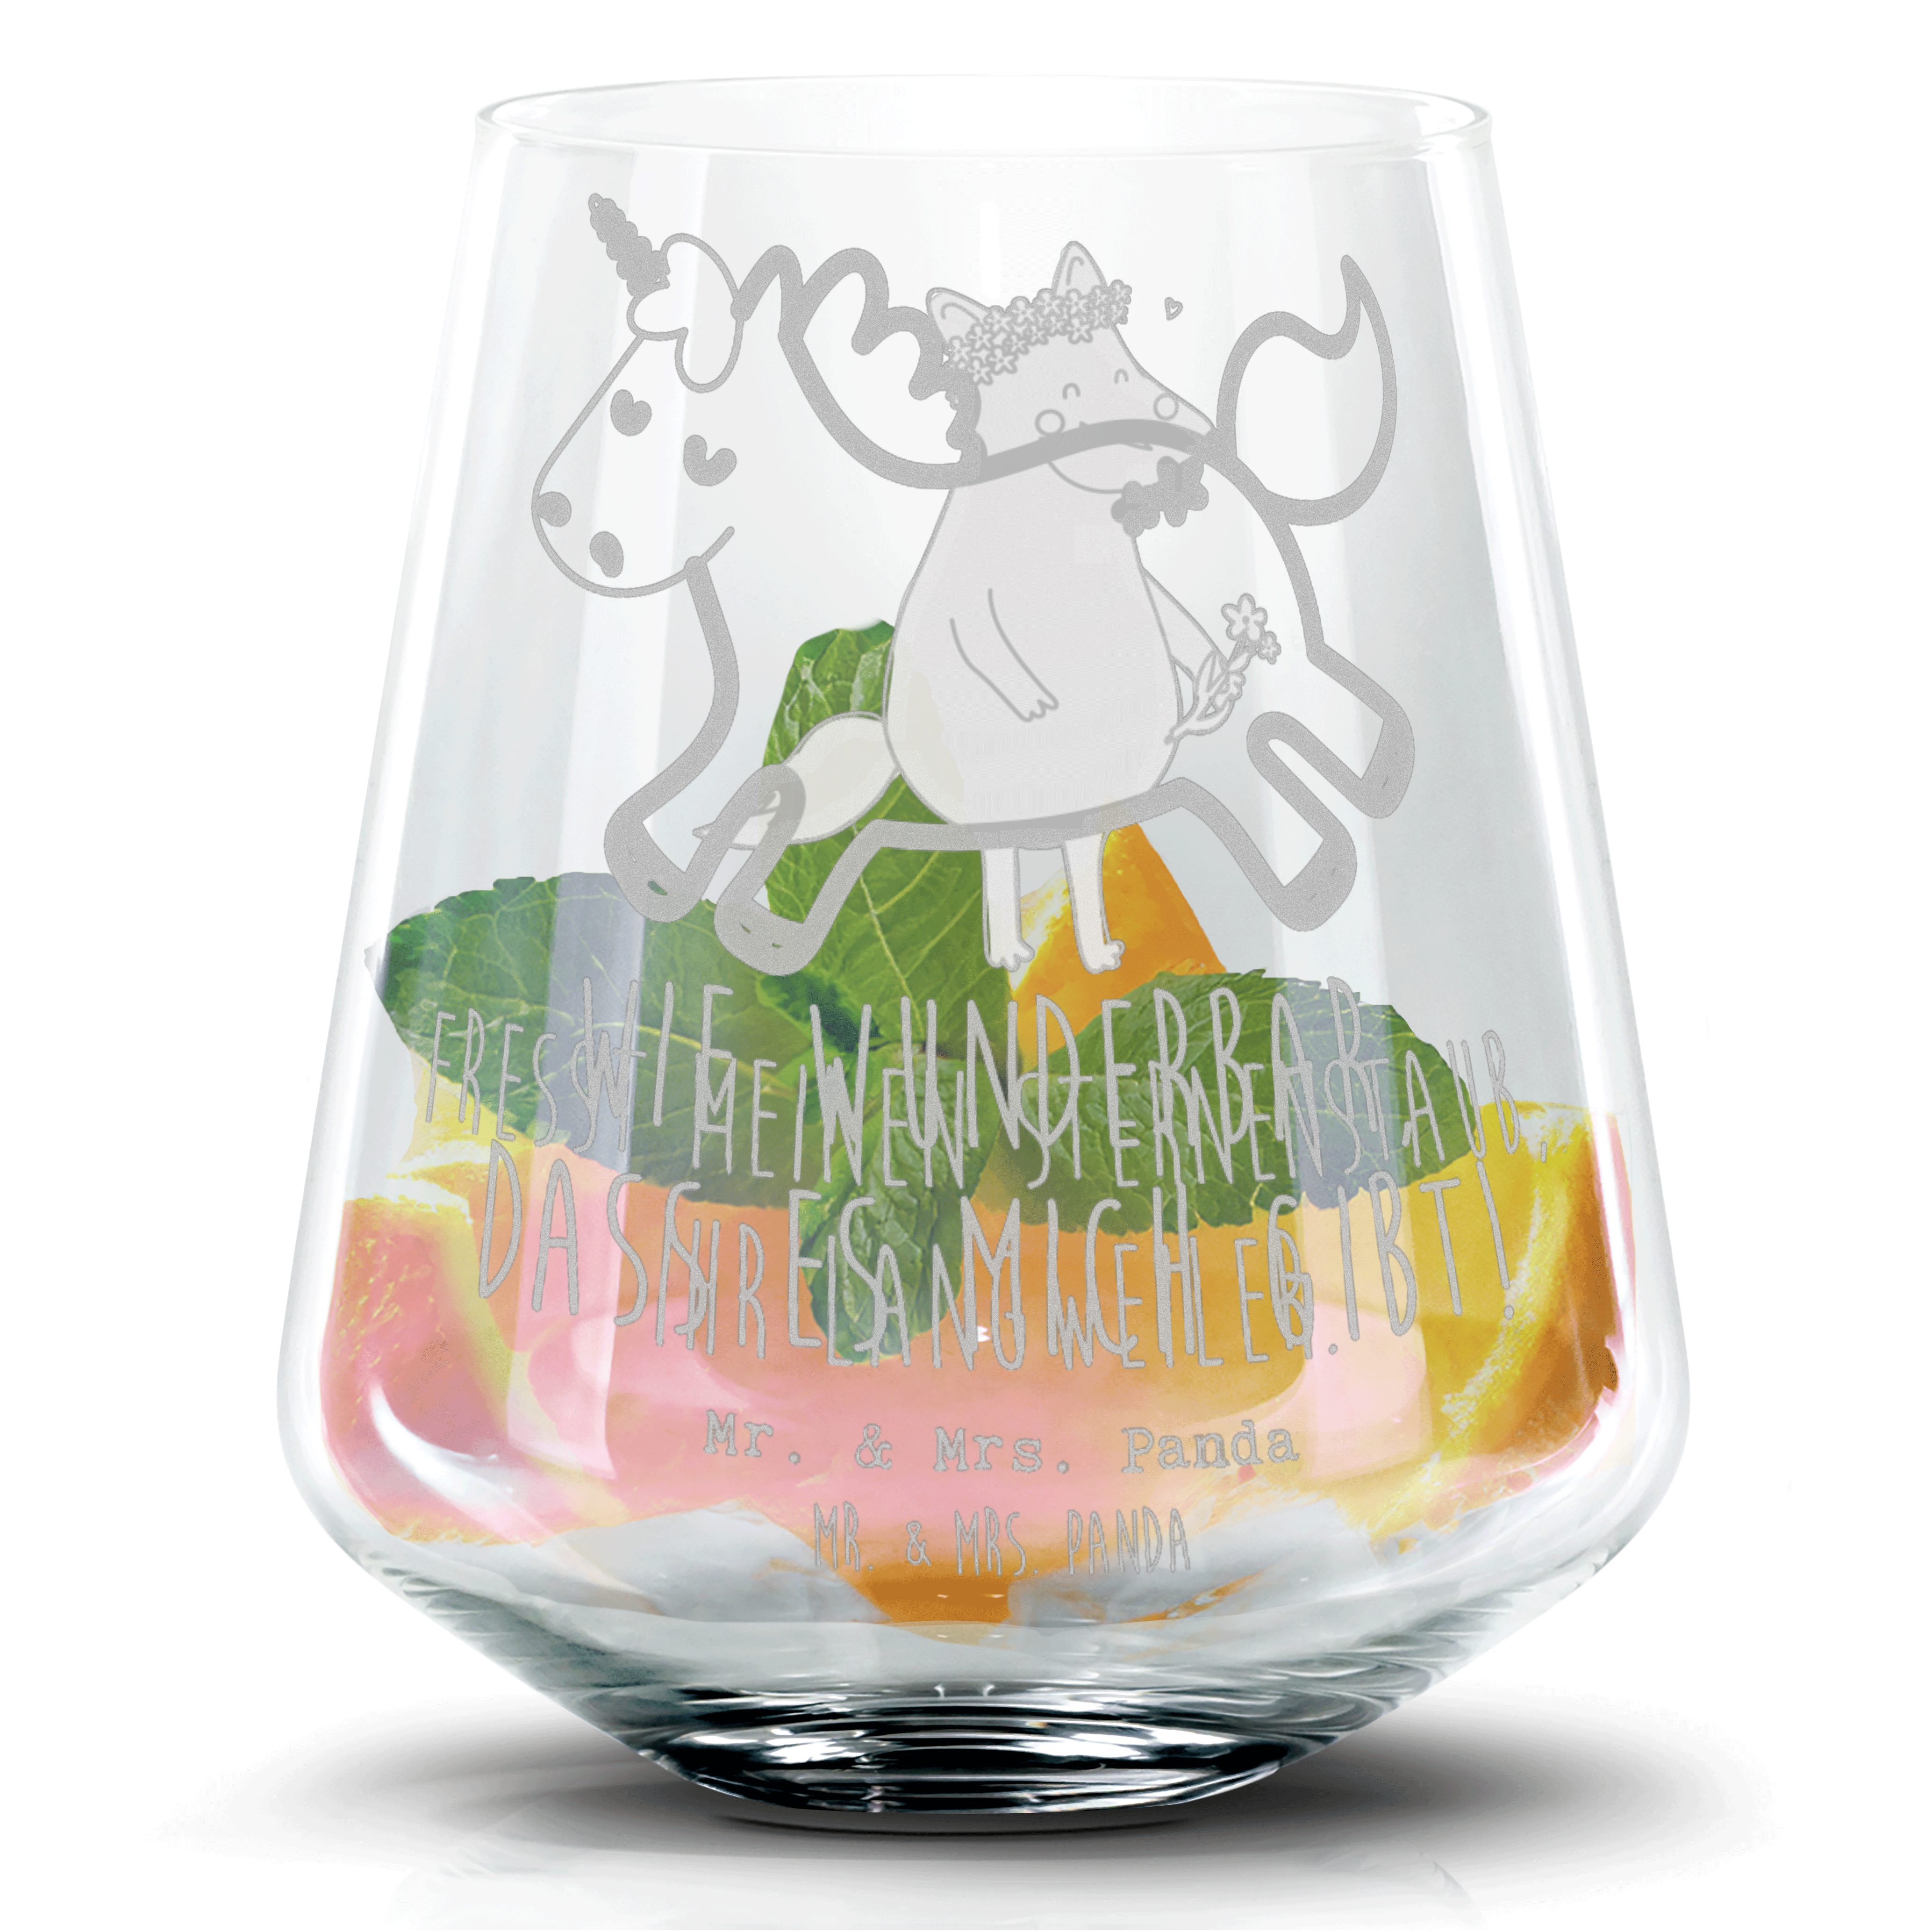 Mr. & Mrs. Panda Cocktailglas Einhorn Happy - Transparent - Geschenk, Cocktail Glas, spannend, Unic, Premium Glas, Zauberhafte Gravuren